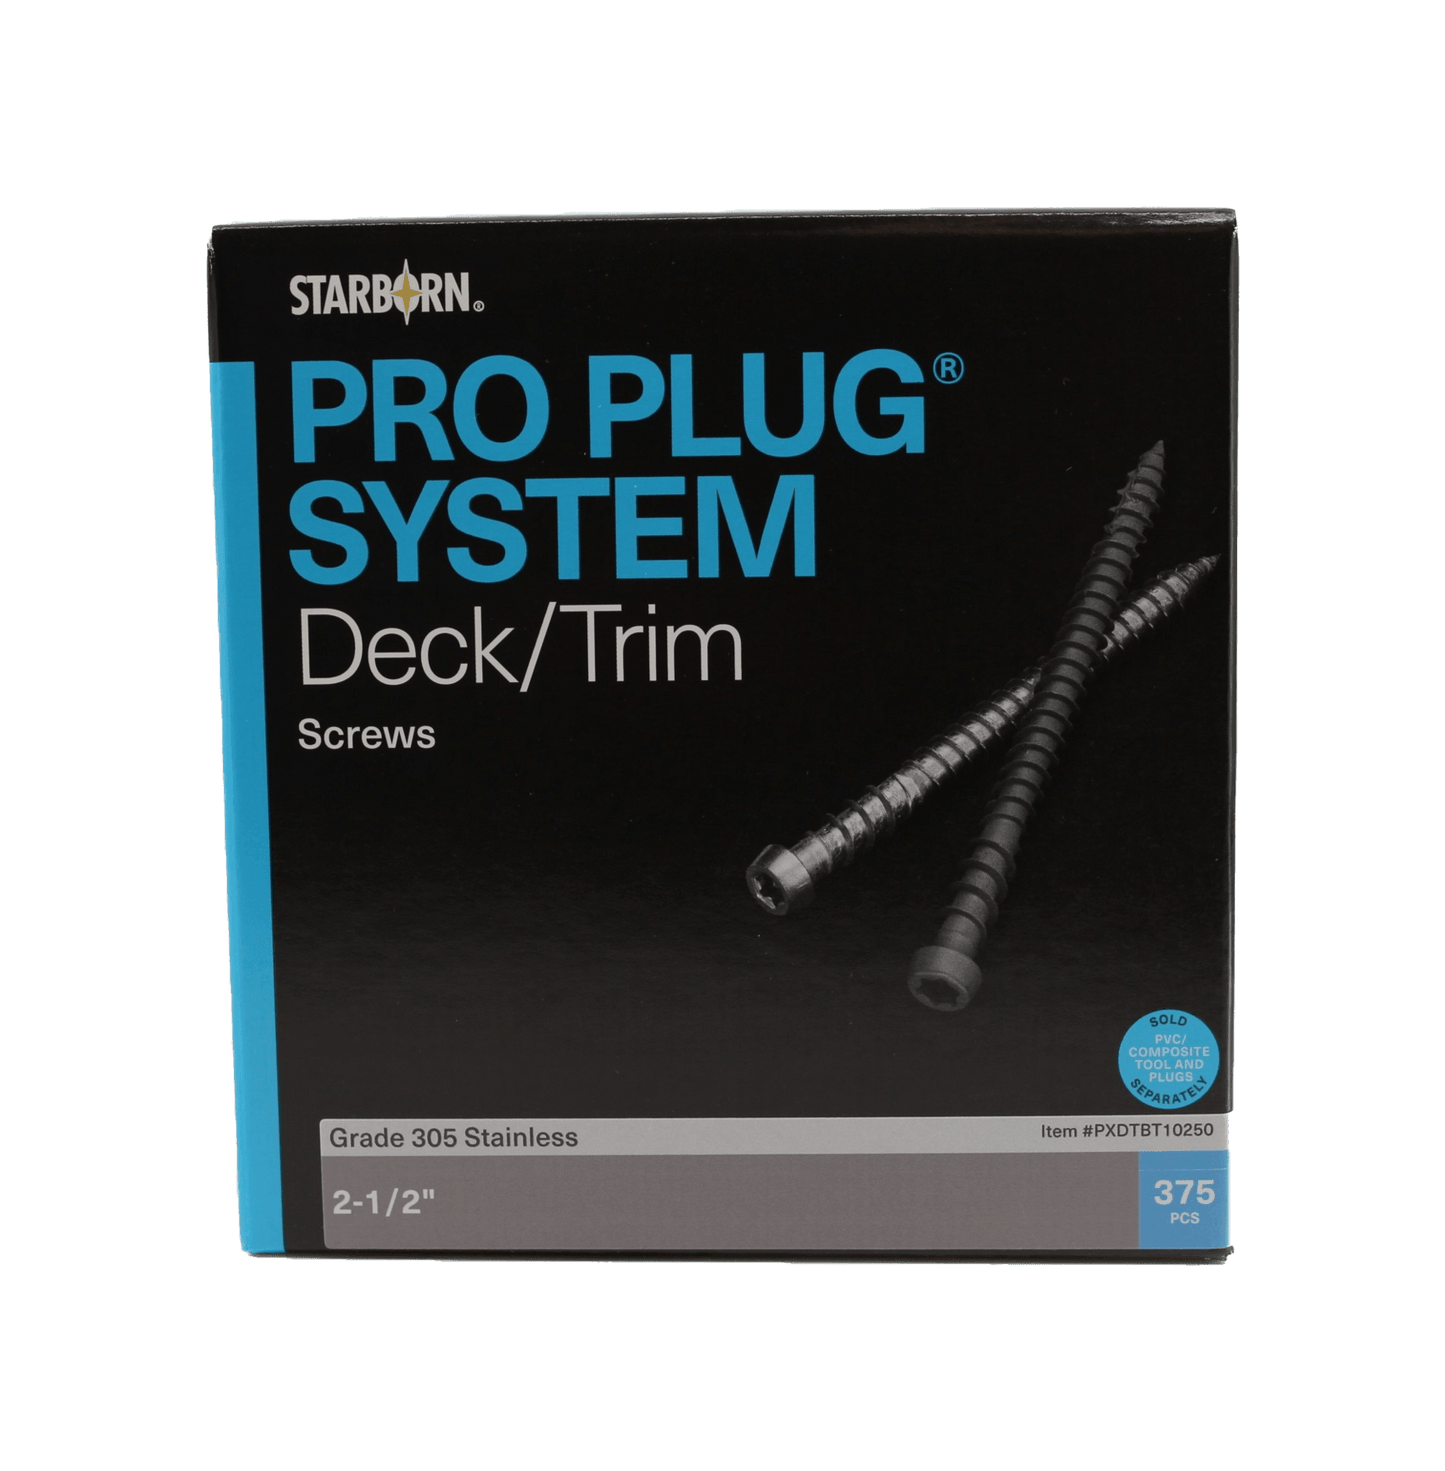 Pro Plug Screws for composite decking